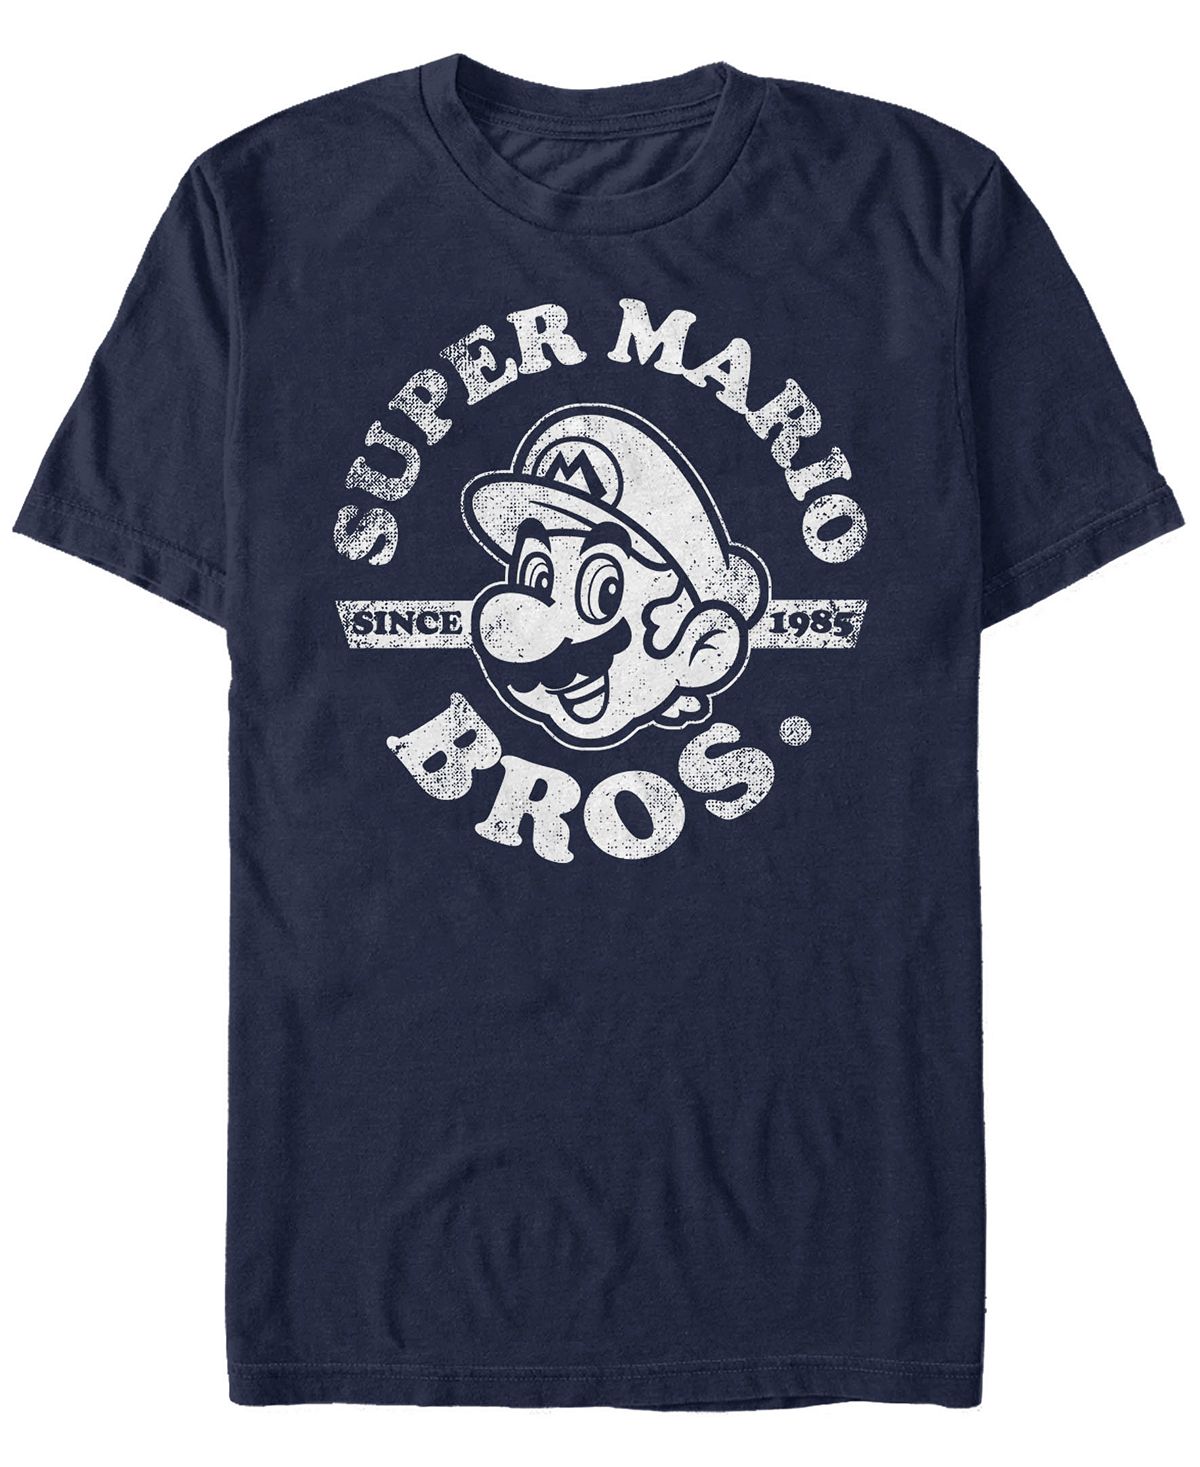 Мужская футболка nintendo super mario bros. с 1985 года с коротким рукавом Fifth Sun, синий nintendo super mario encyclopedia